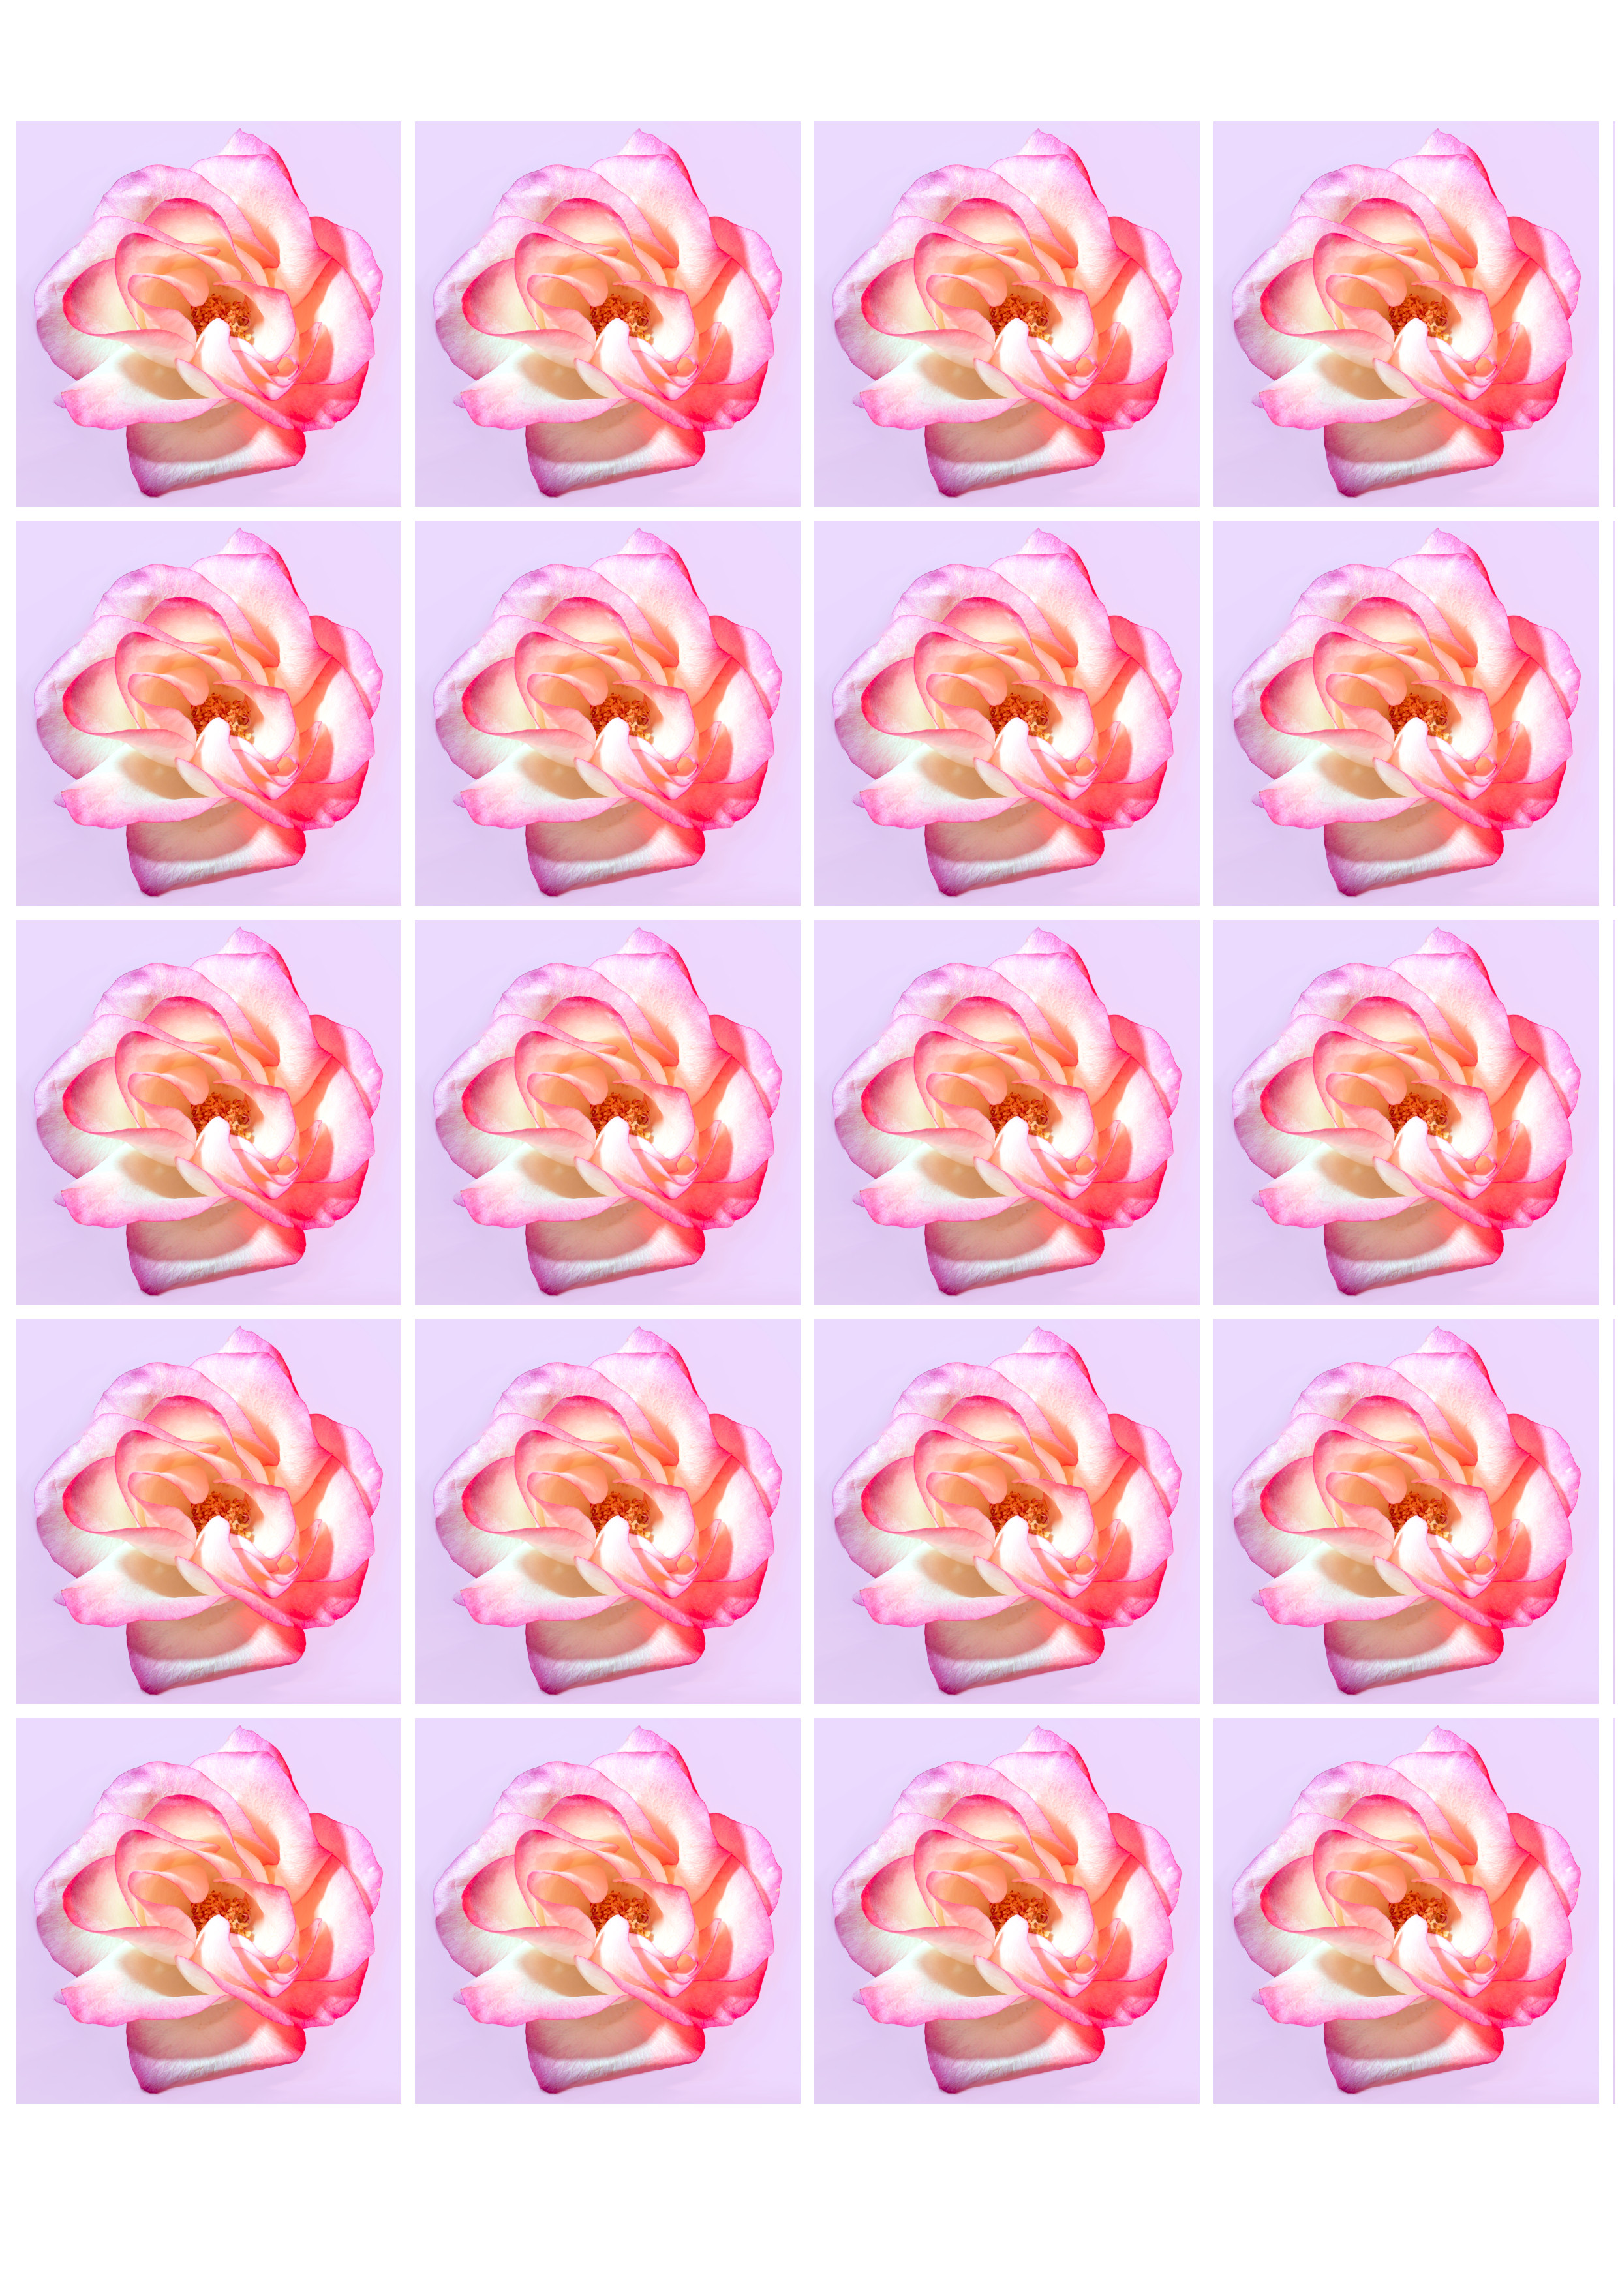 Vaaleanpunainen ruusu sinulle - Syötävä muffinssikuva